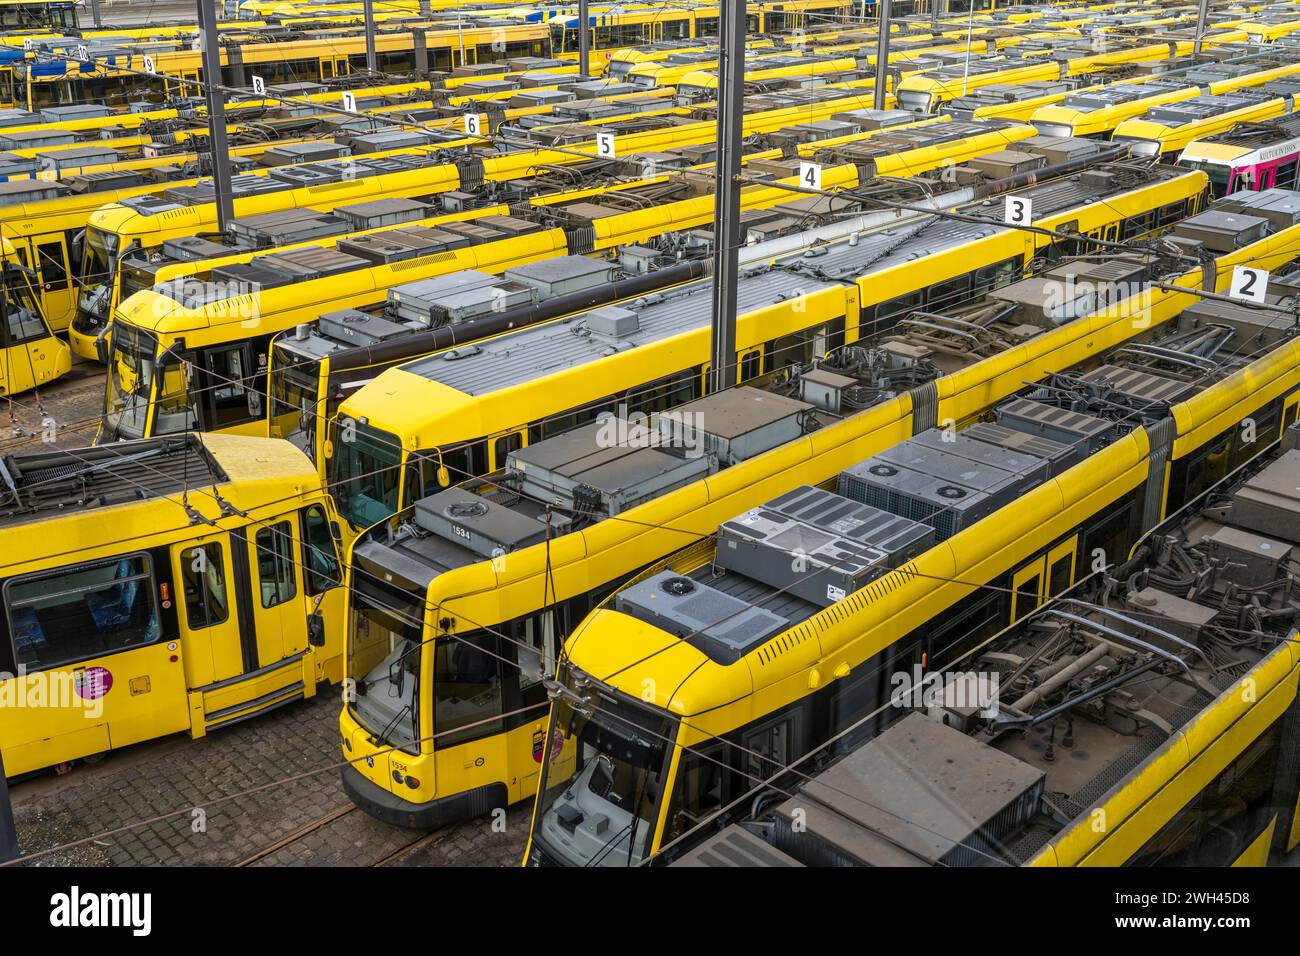 Grèves d'avertissement dans les transports publics locaux, tramways Ruhrbahn au dépôt, syndicalistes VERDI en grève, pas de trains en circulation, Essen, NRW, Allemagne Banque D'Images